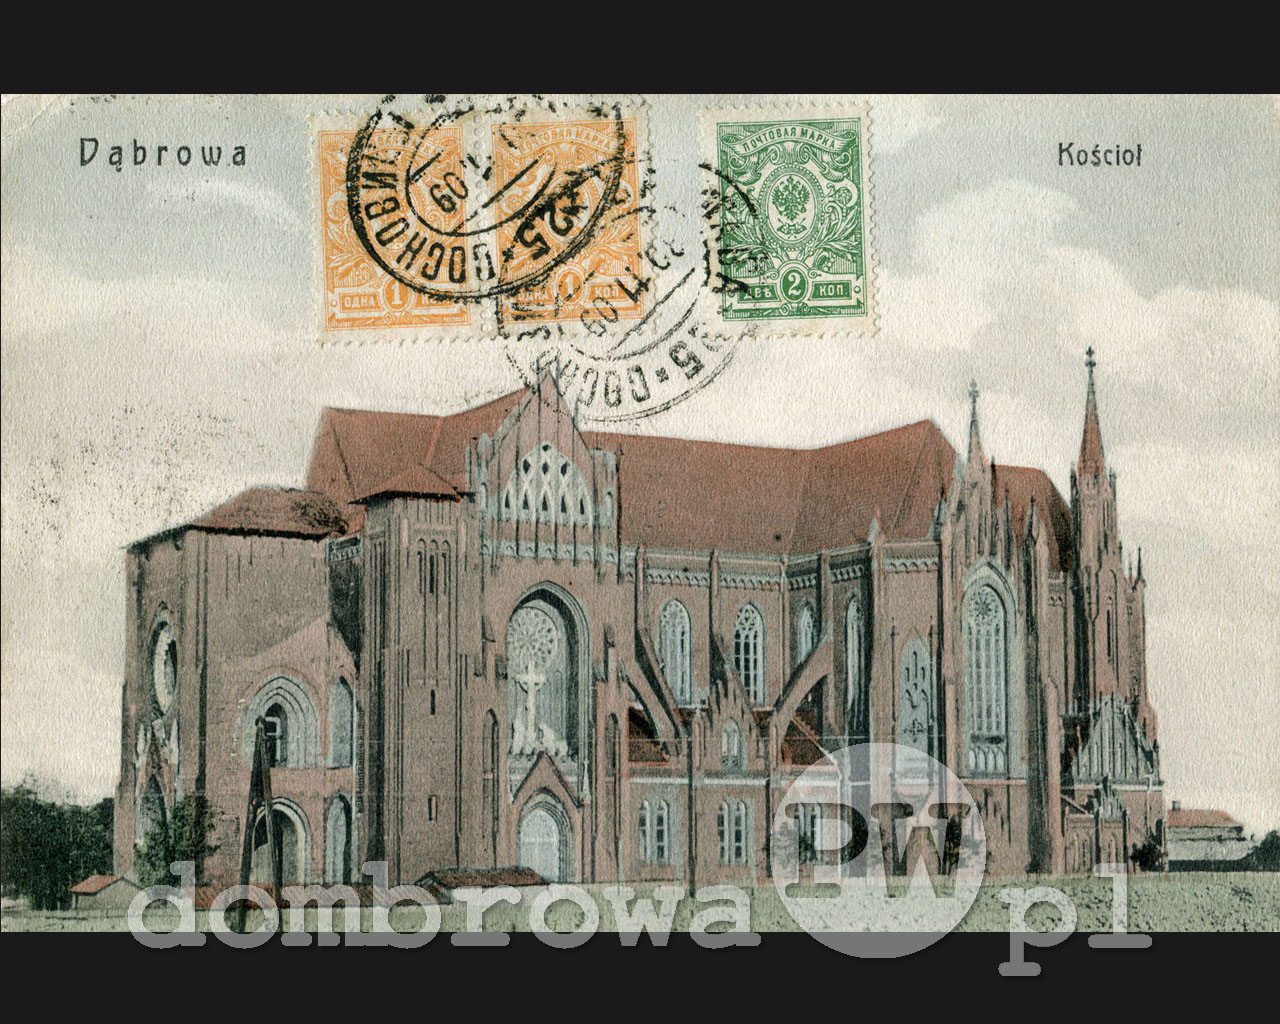 1905 r. Dąbrowa - Kościół (Zmigrod)